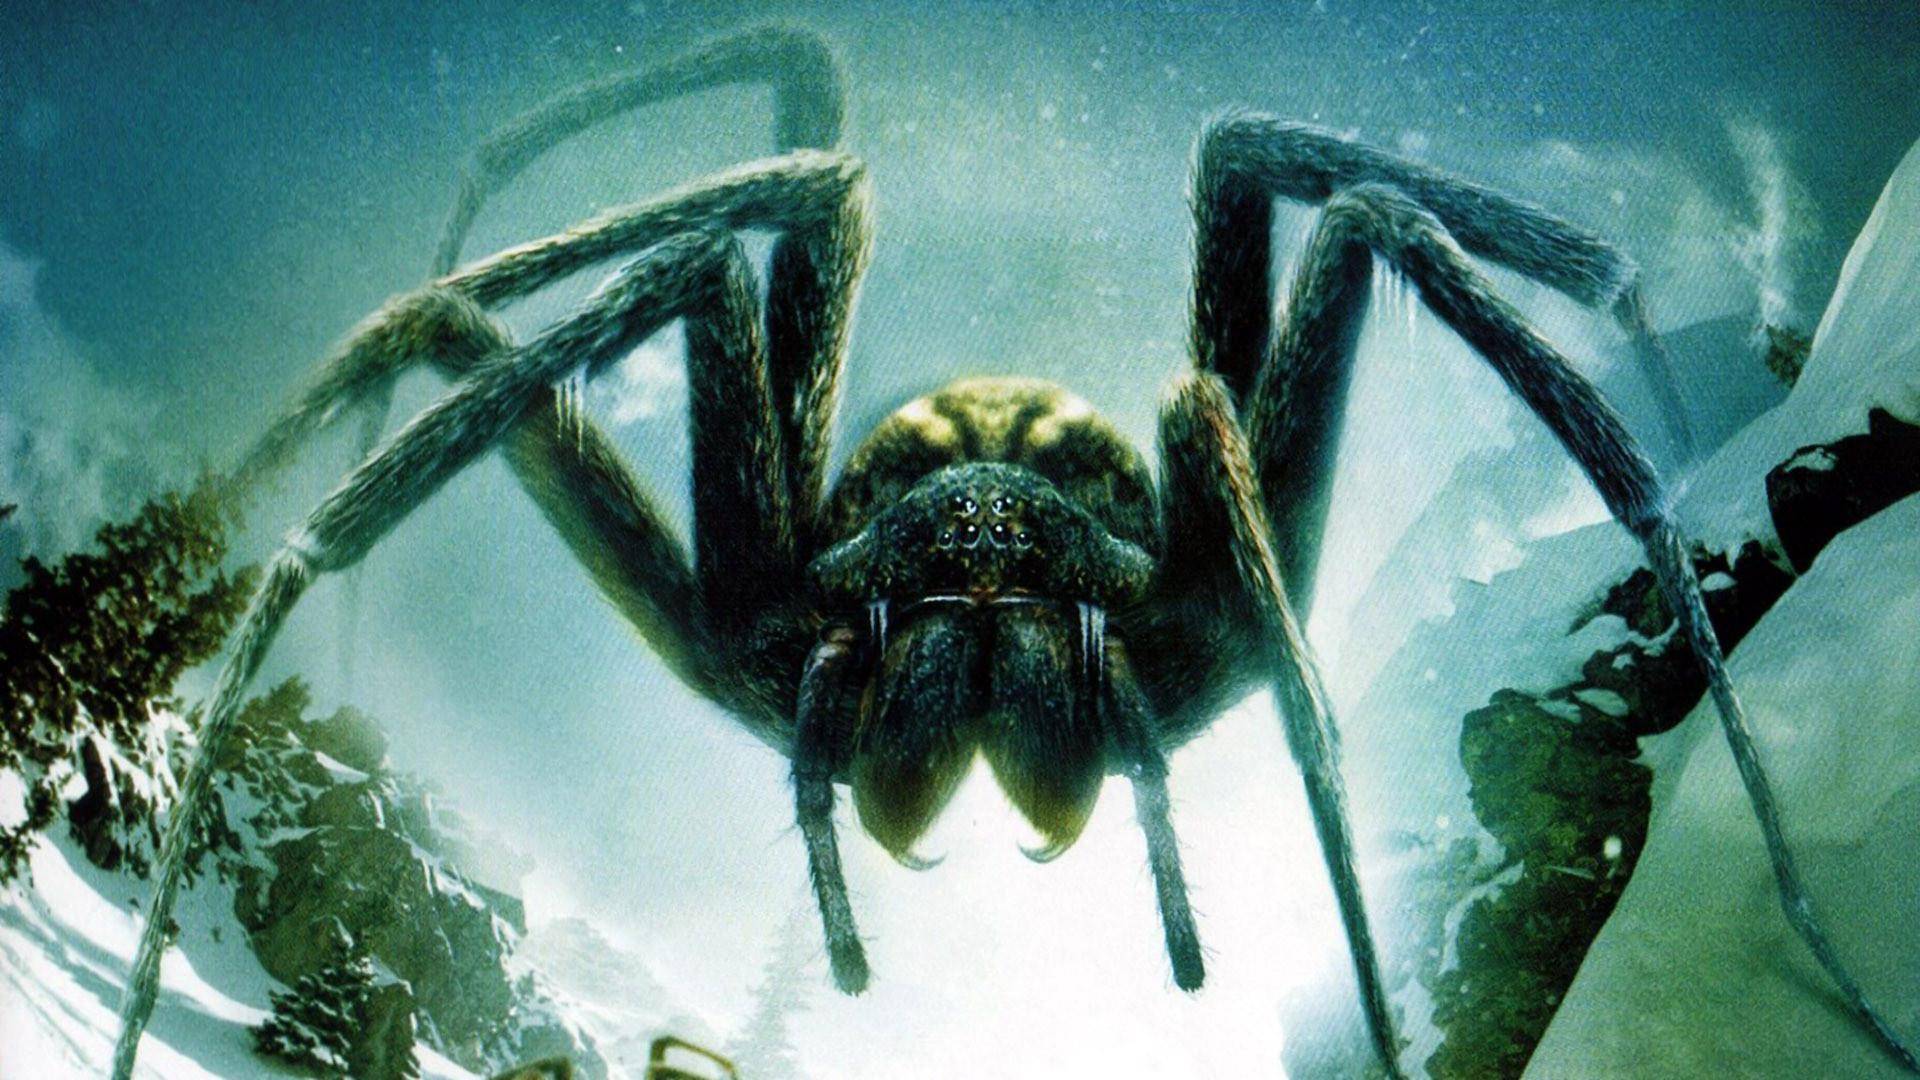 1920x1080 Ice Spiders (Hình nền) - Hình nền Phim quái vật khổng lồ